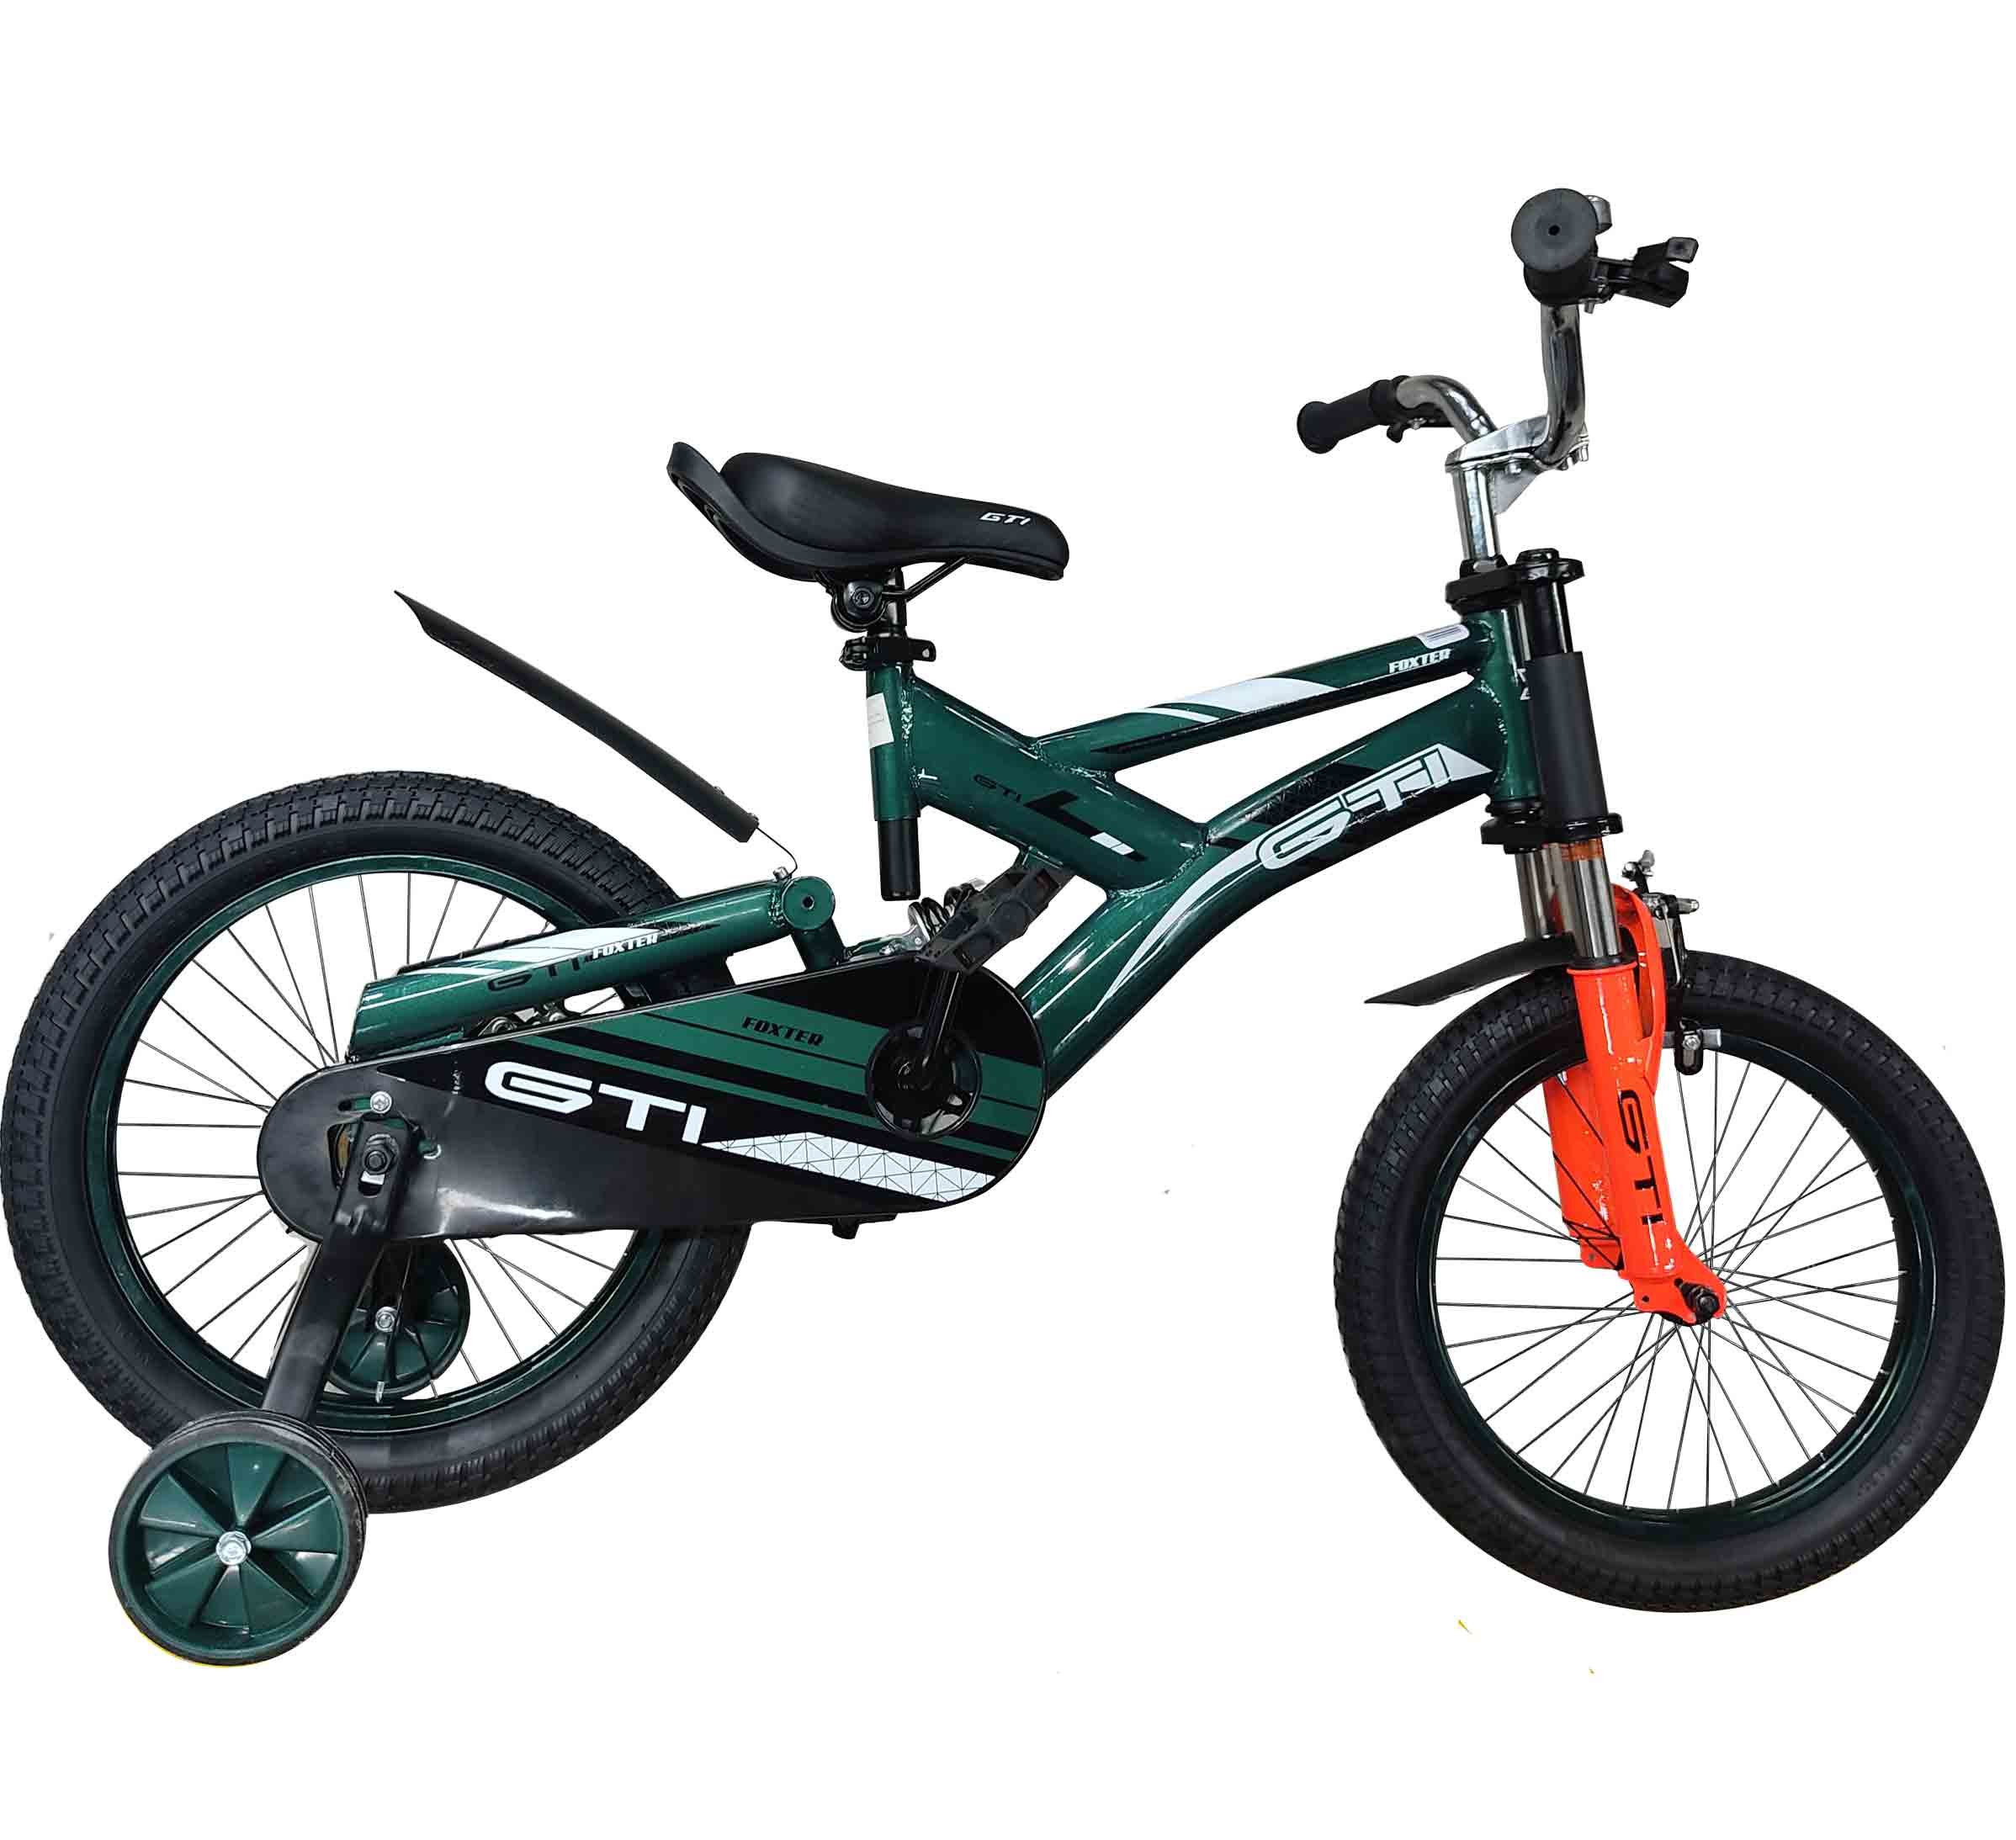 GTI Bicicleta Foxter de niño aro16”